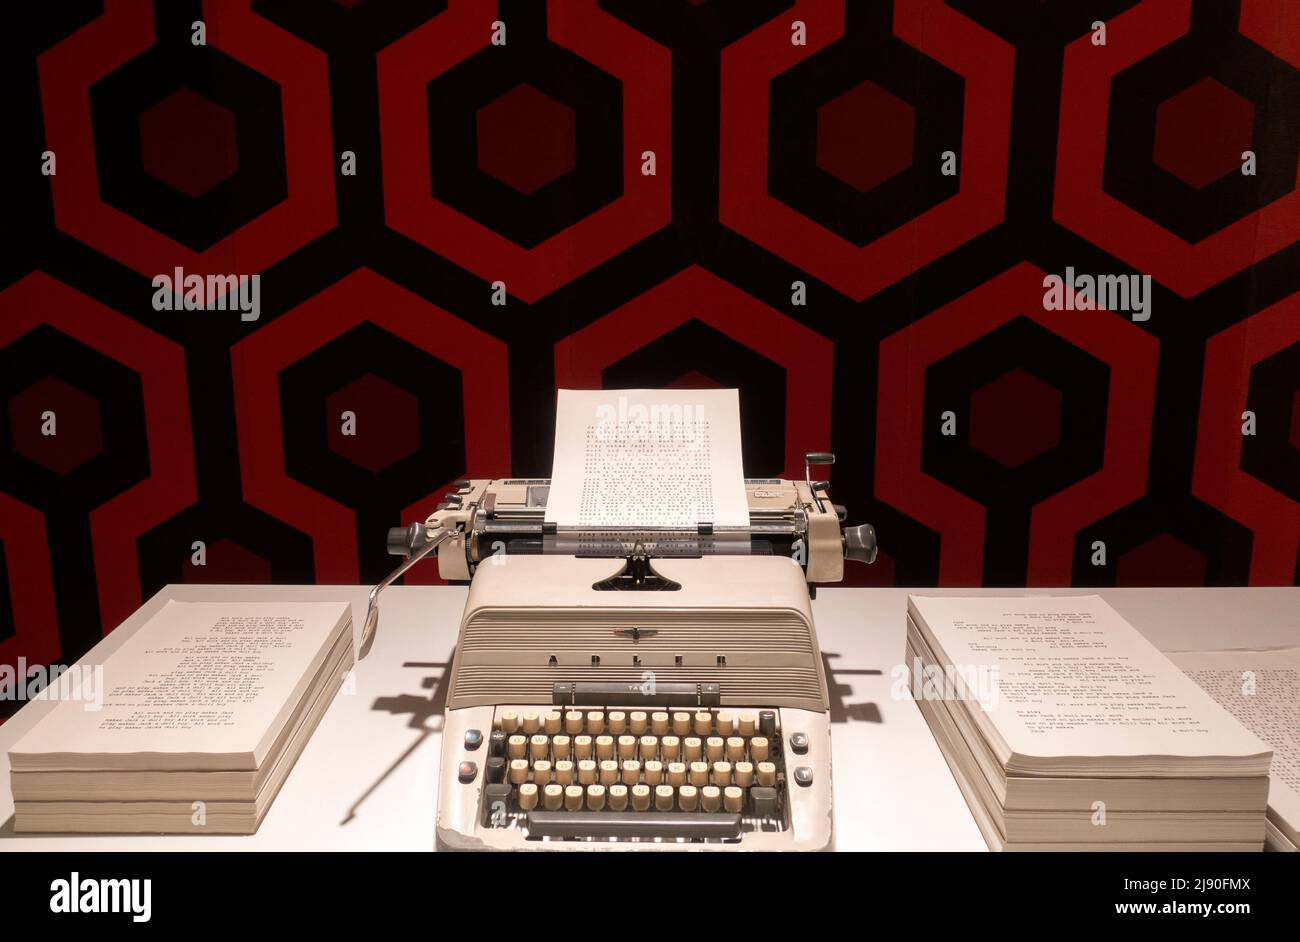 Macchina da scrivere usata nel film “The Shining”.Stanley Kubrick Exhibition.CCCB Museum.Barcelona.Spain Foto Stock